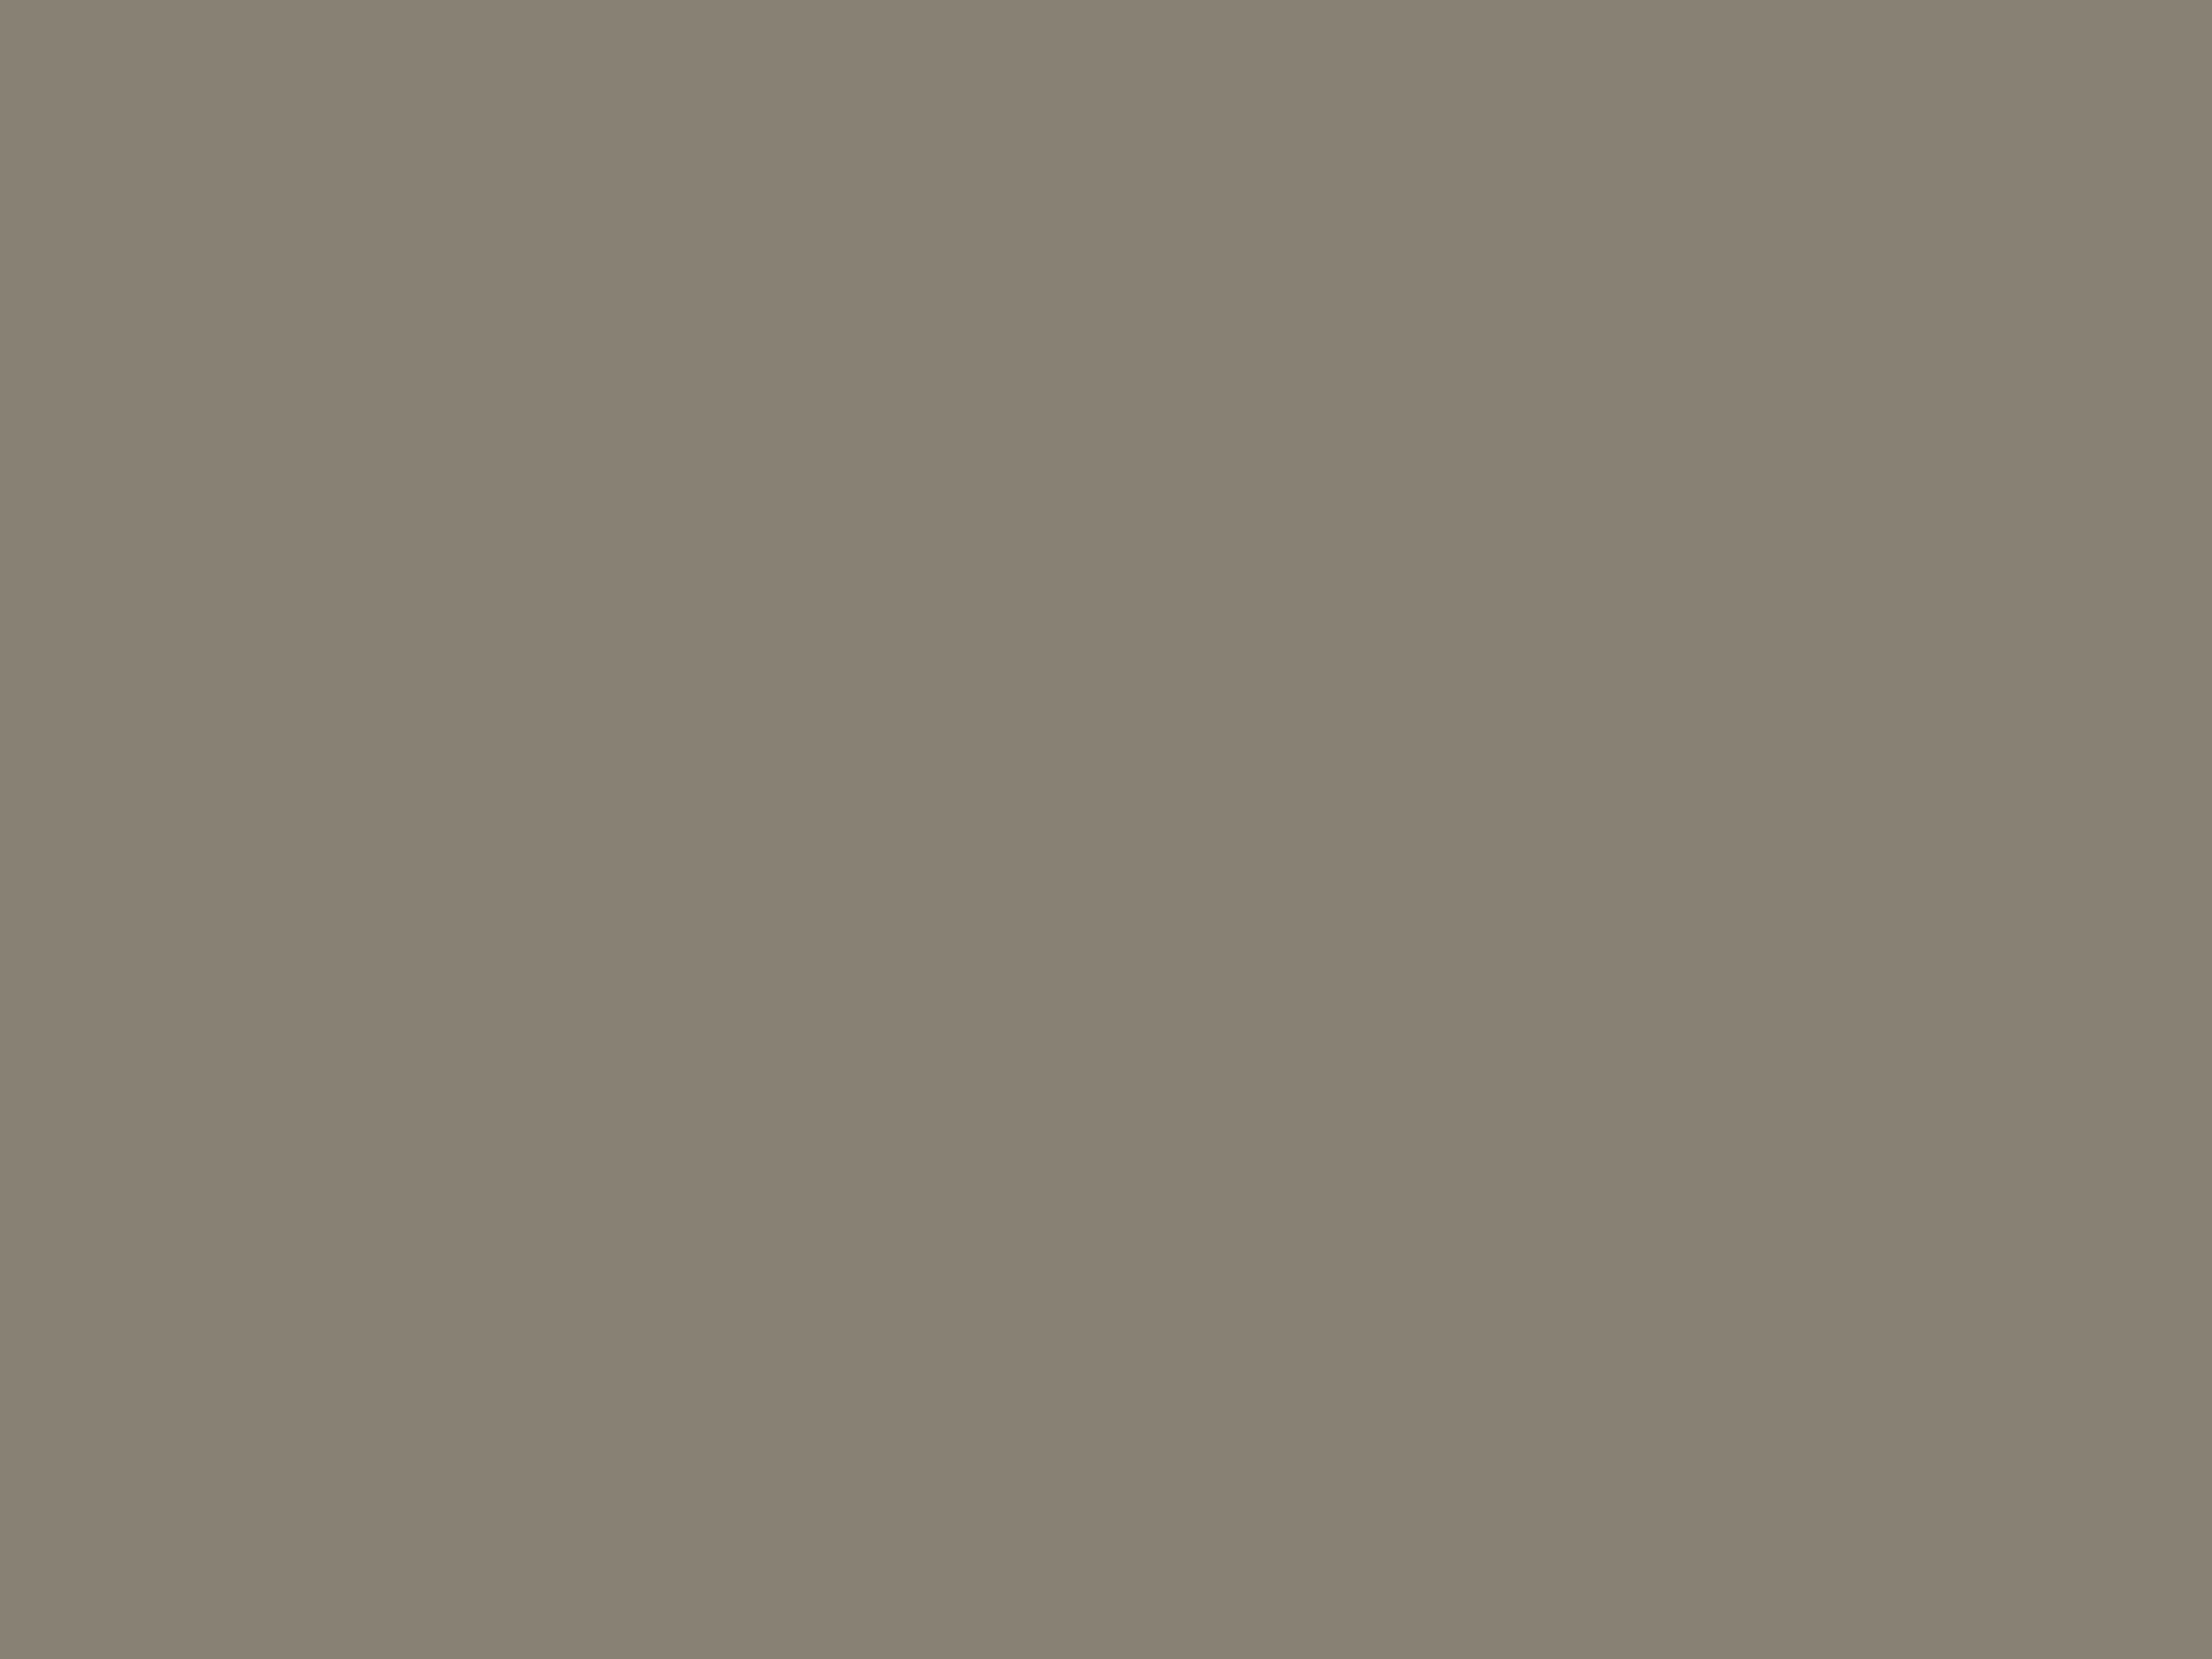 Василий Кандинский. Черное пятно. 1912. Государственный Русский музей, Санкт-Петербург